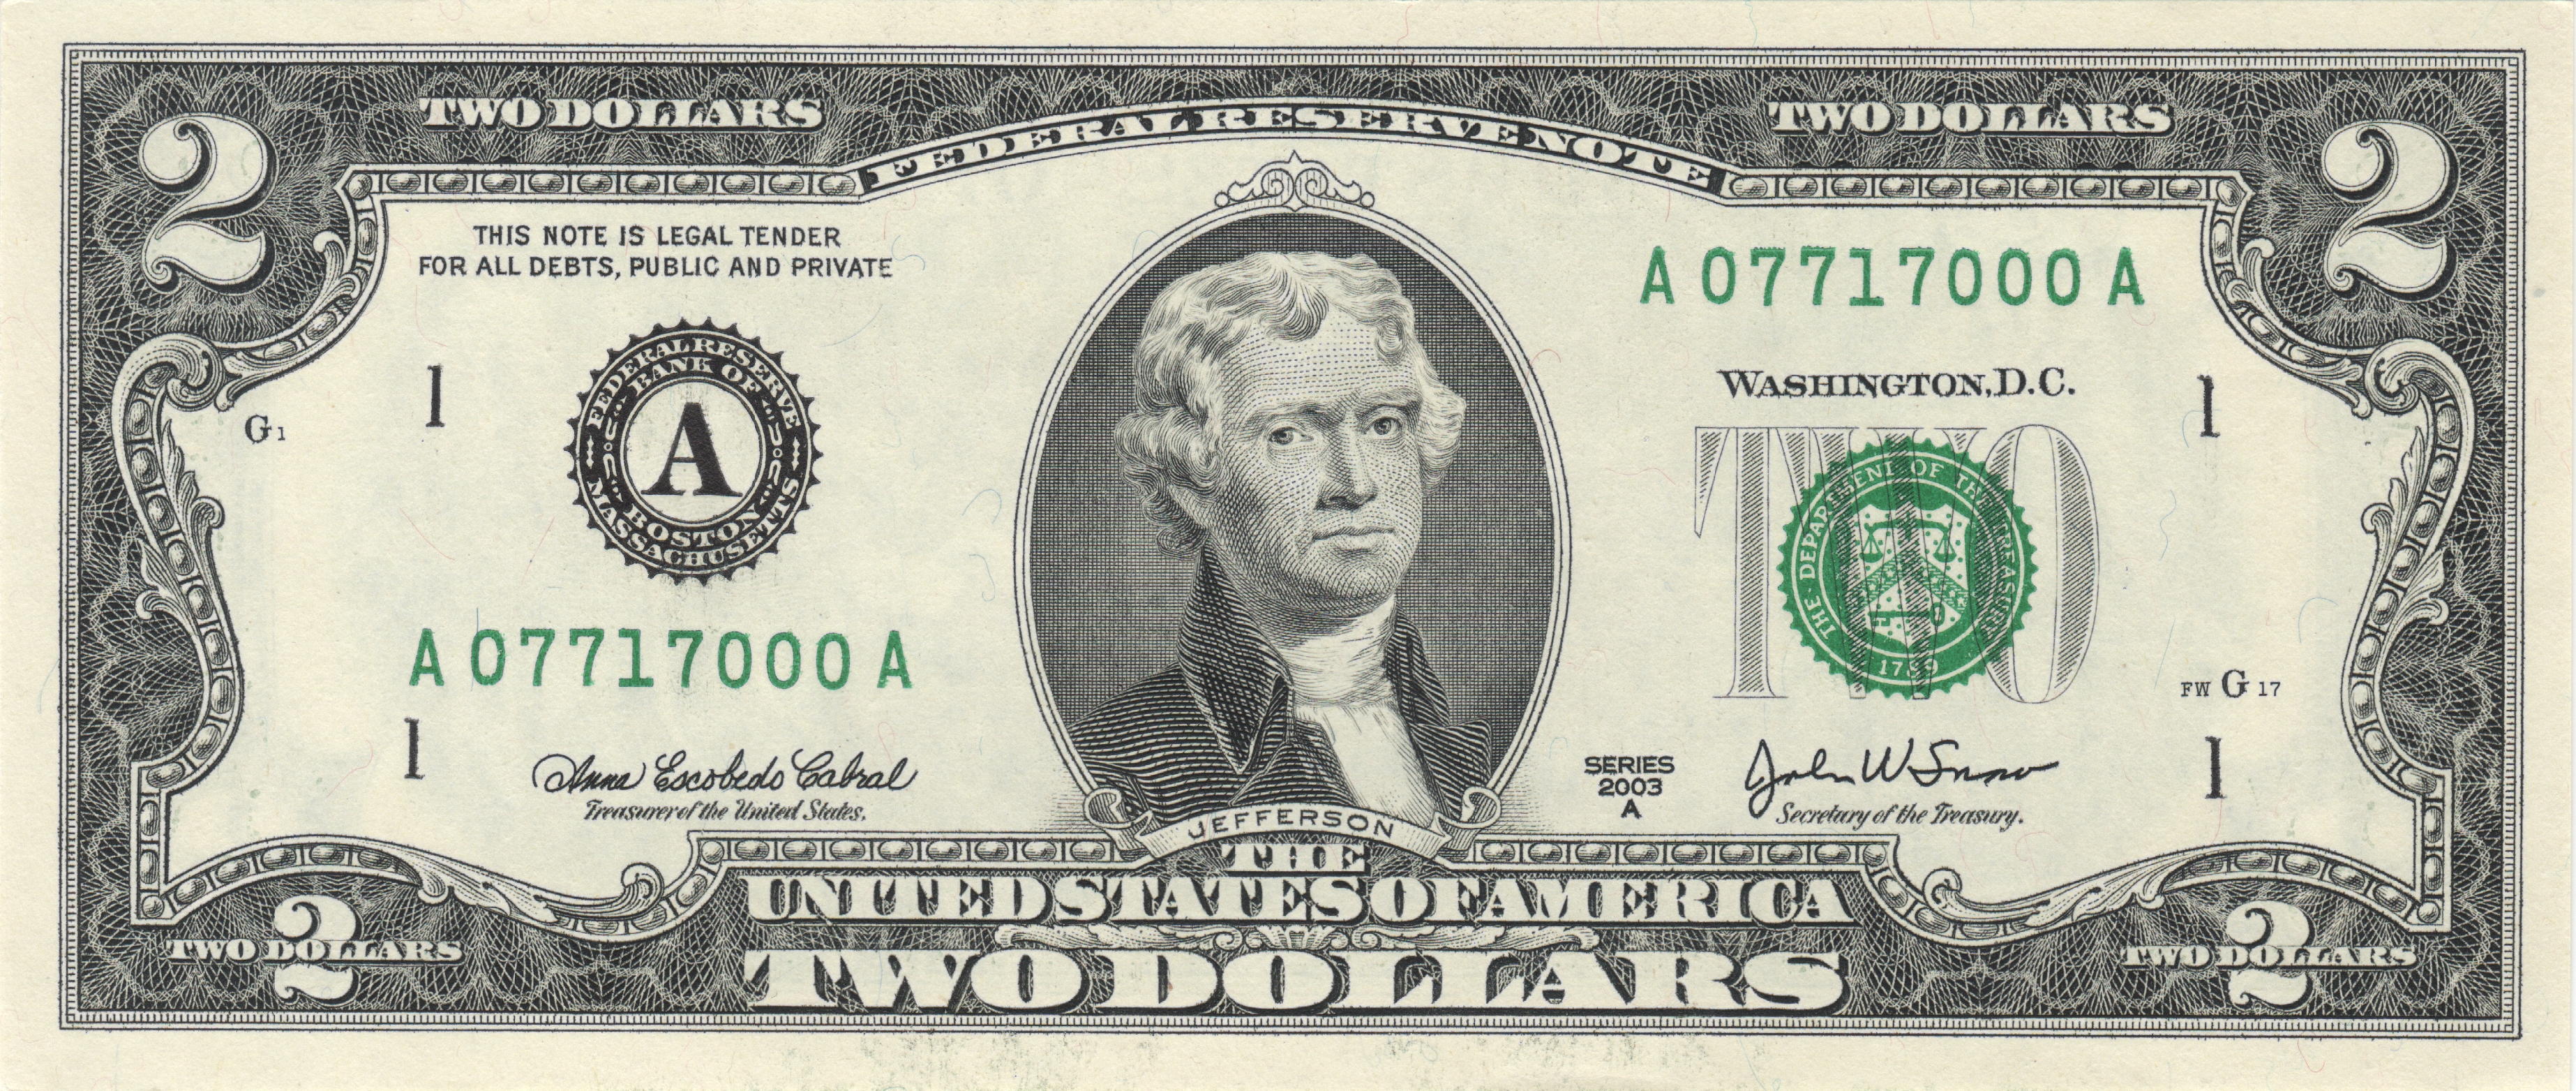 2003 $2 bill